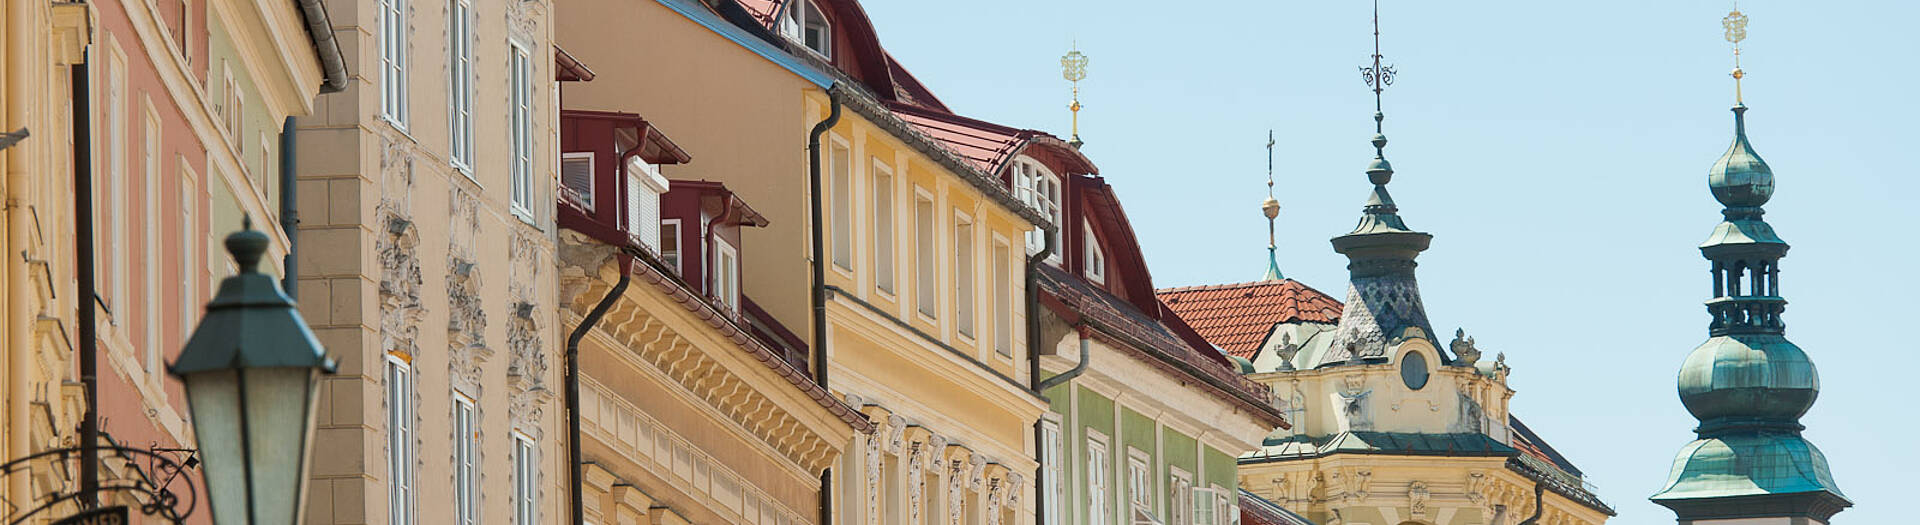 Klagenfurt Altstadt Fassaden